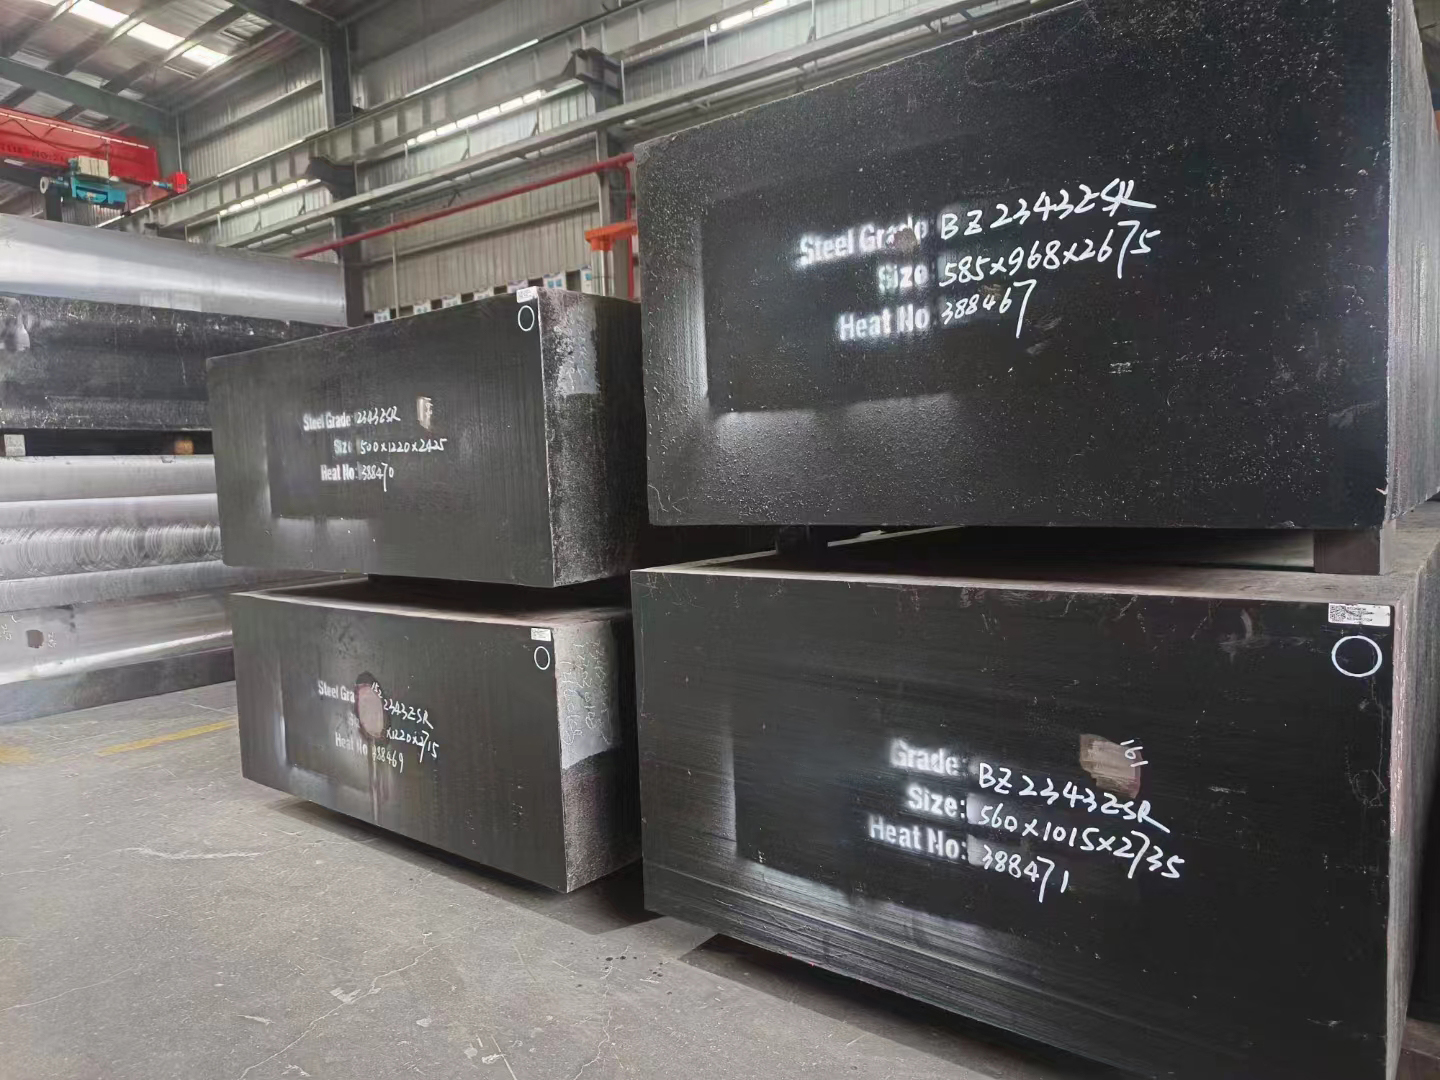 8566板材生产厂家欢迎咨询订购